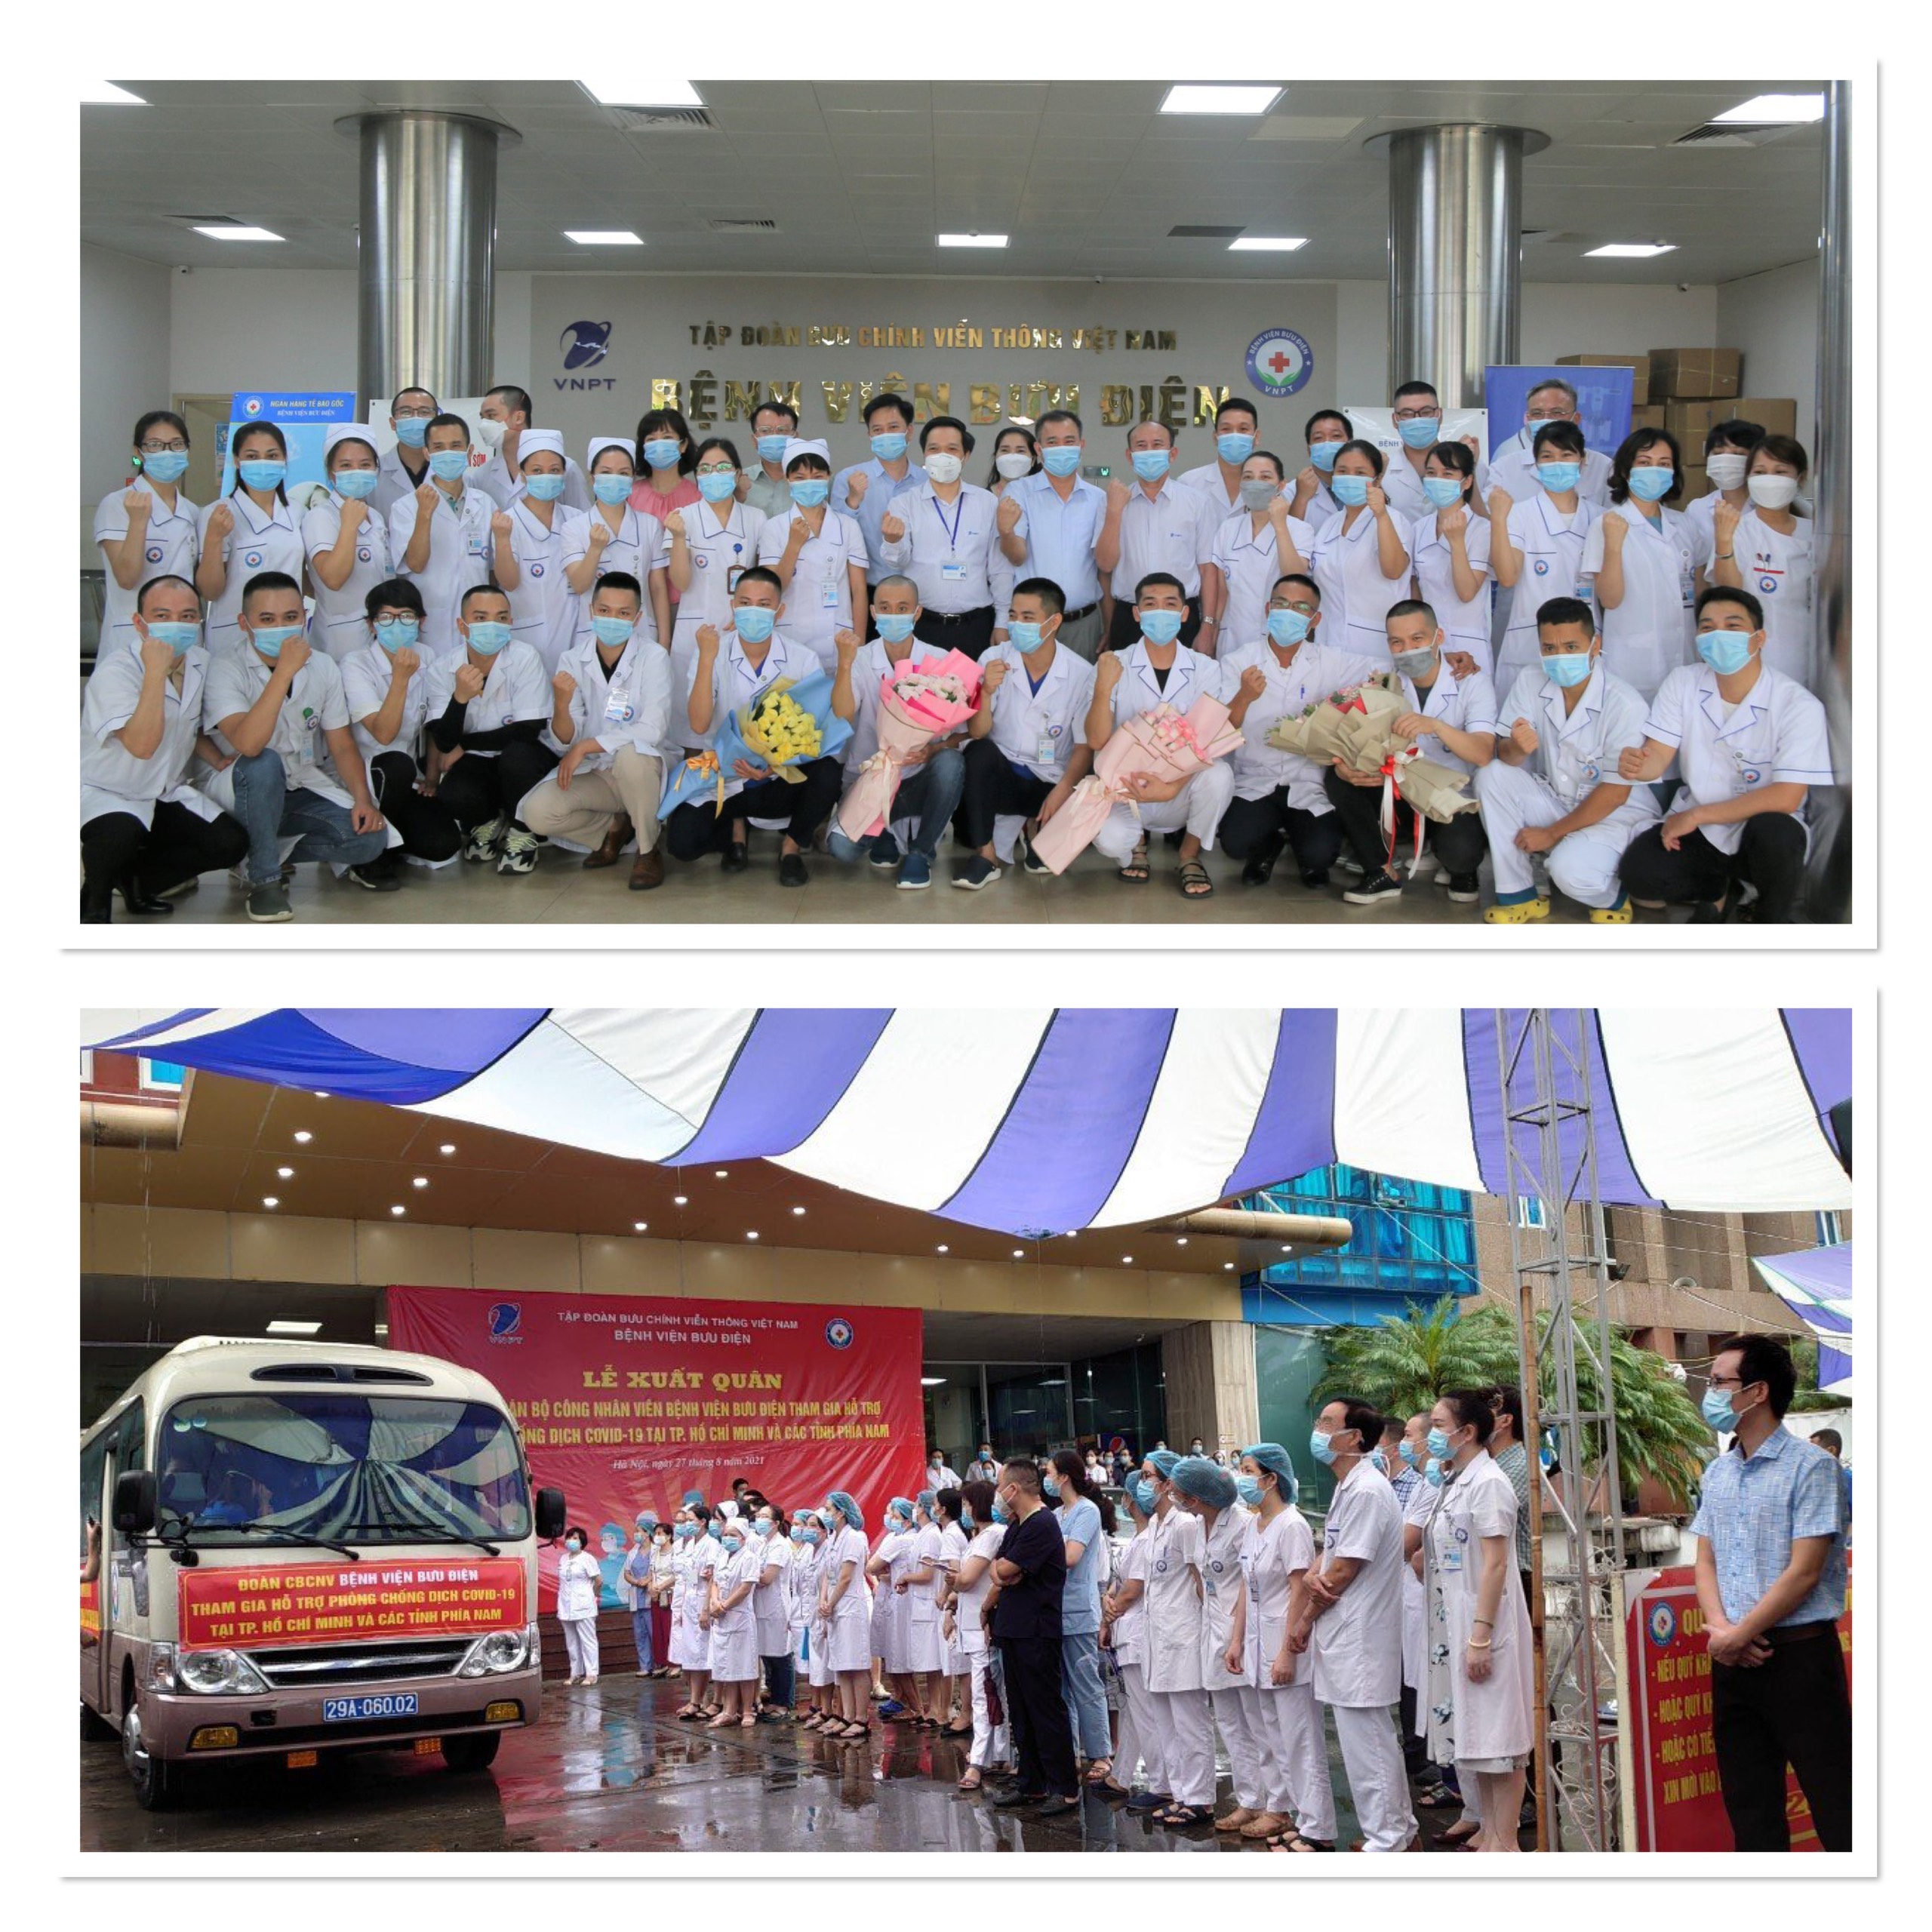 Bệnh viện Bưu điện tiễn Đoàn y bác sĩ tình nguyện lên đường hỗ trợ TP Hồ Chí Minh chống dịch COVID-19.